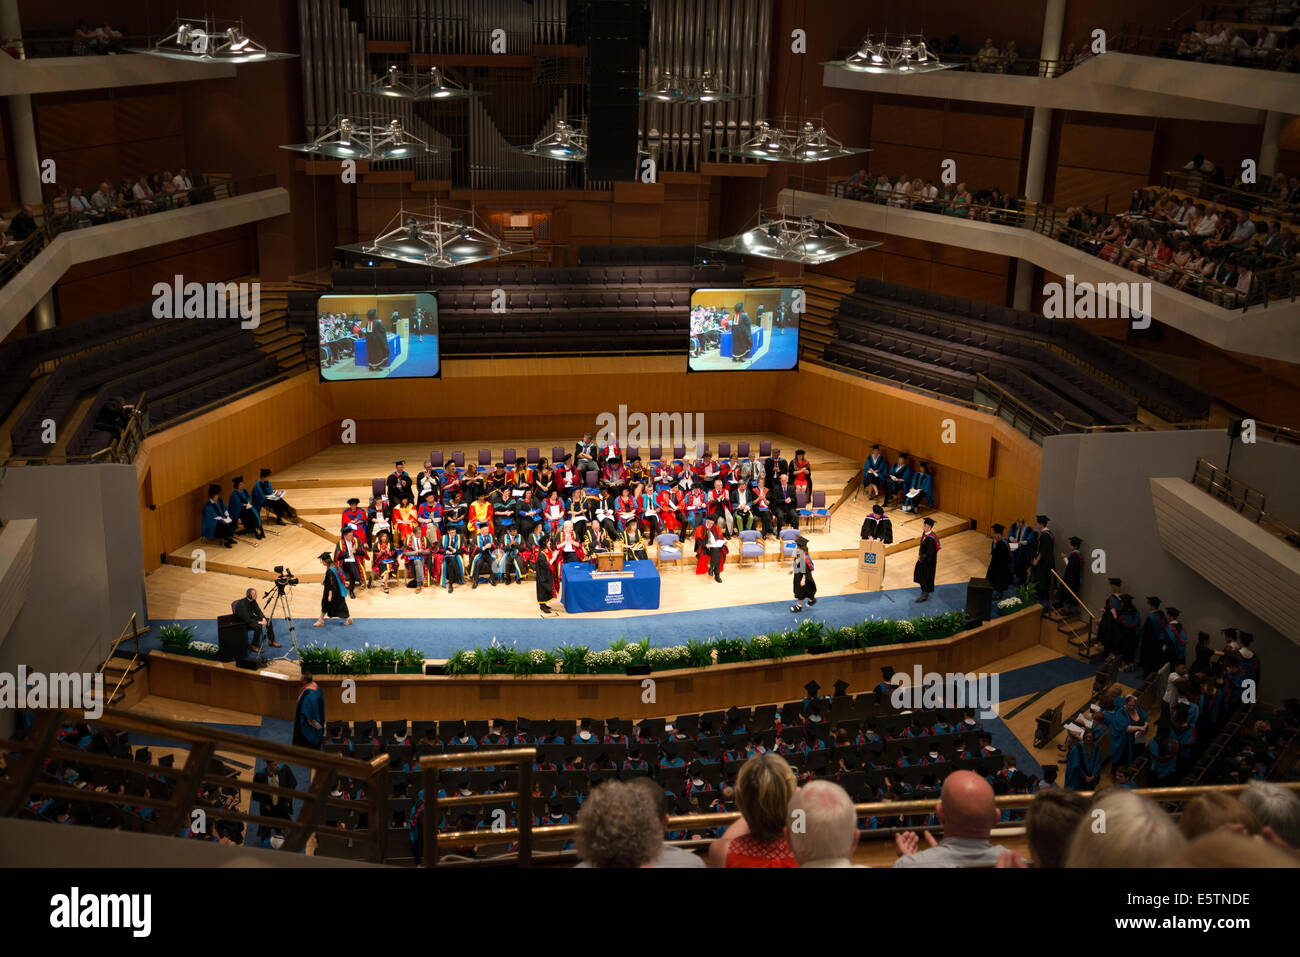 Cérémonie de remise de diplômes à l'Université métropolitaine de Manchester, Manchester, UK Banque D'Images